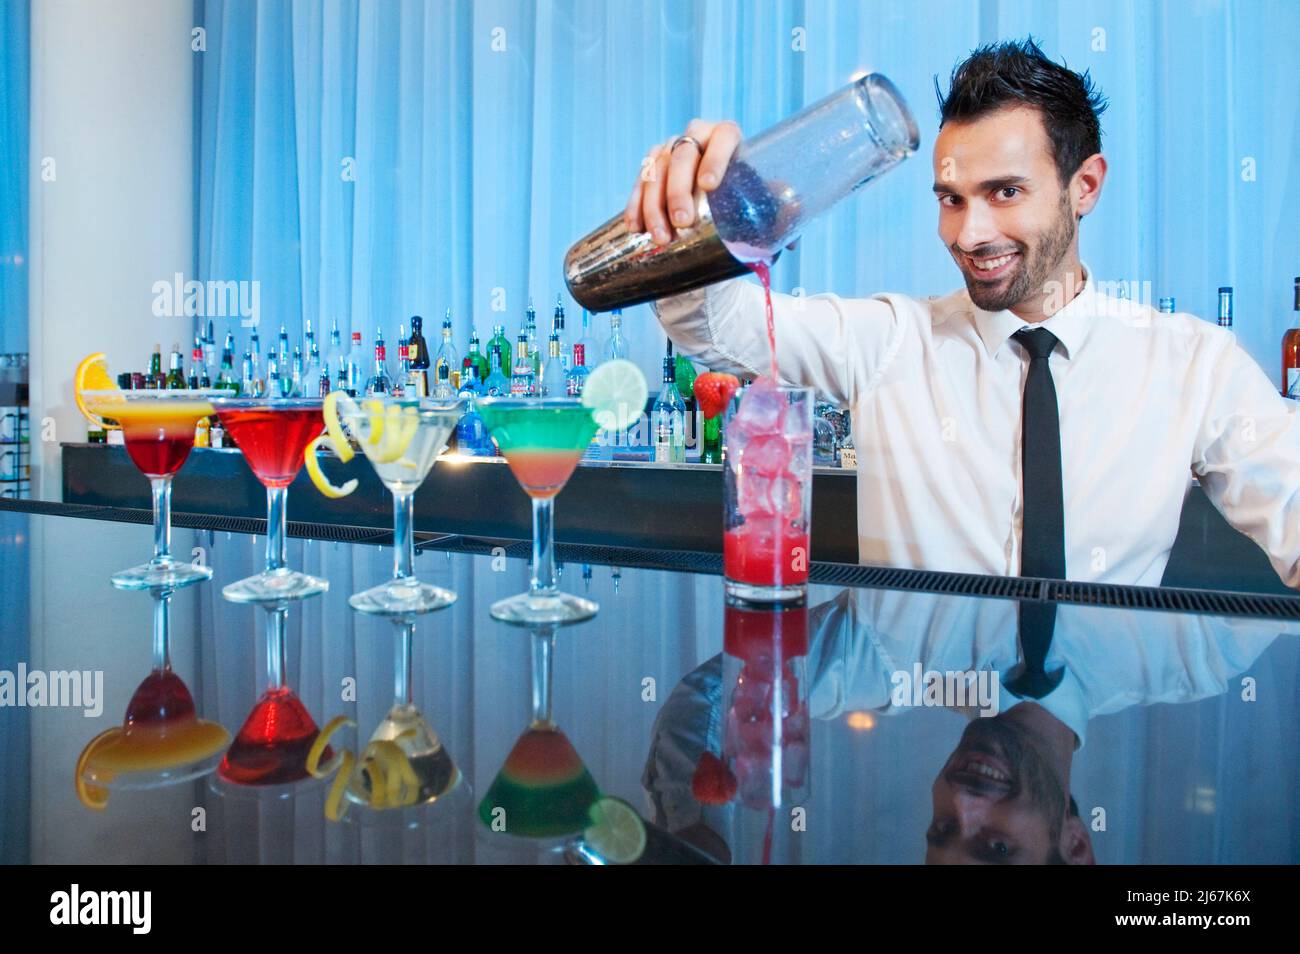 Der Barkeeper lächelt der Kamera zu, während er Getränke gießt. Stockfoto